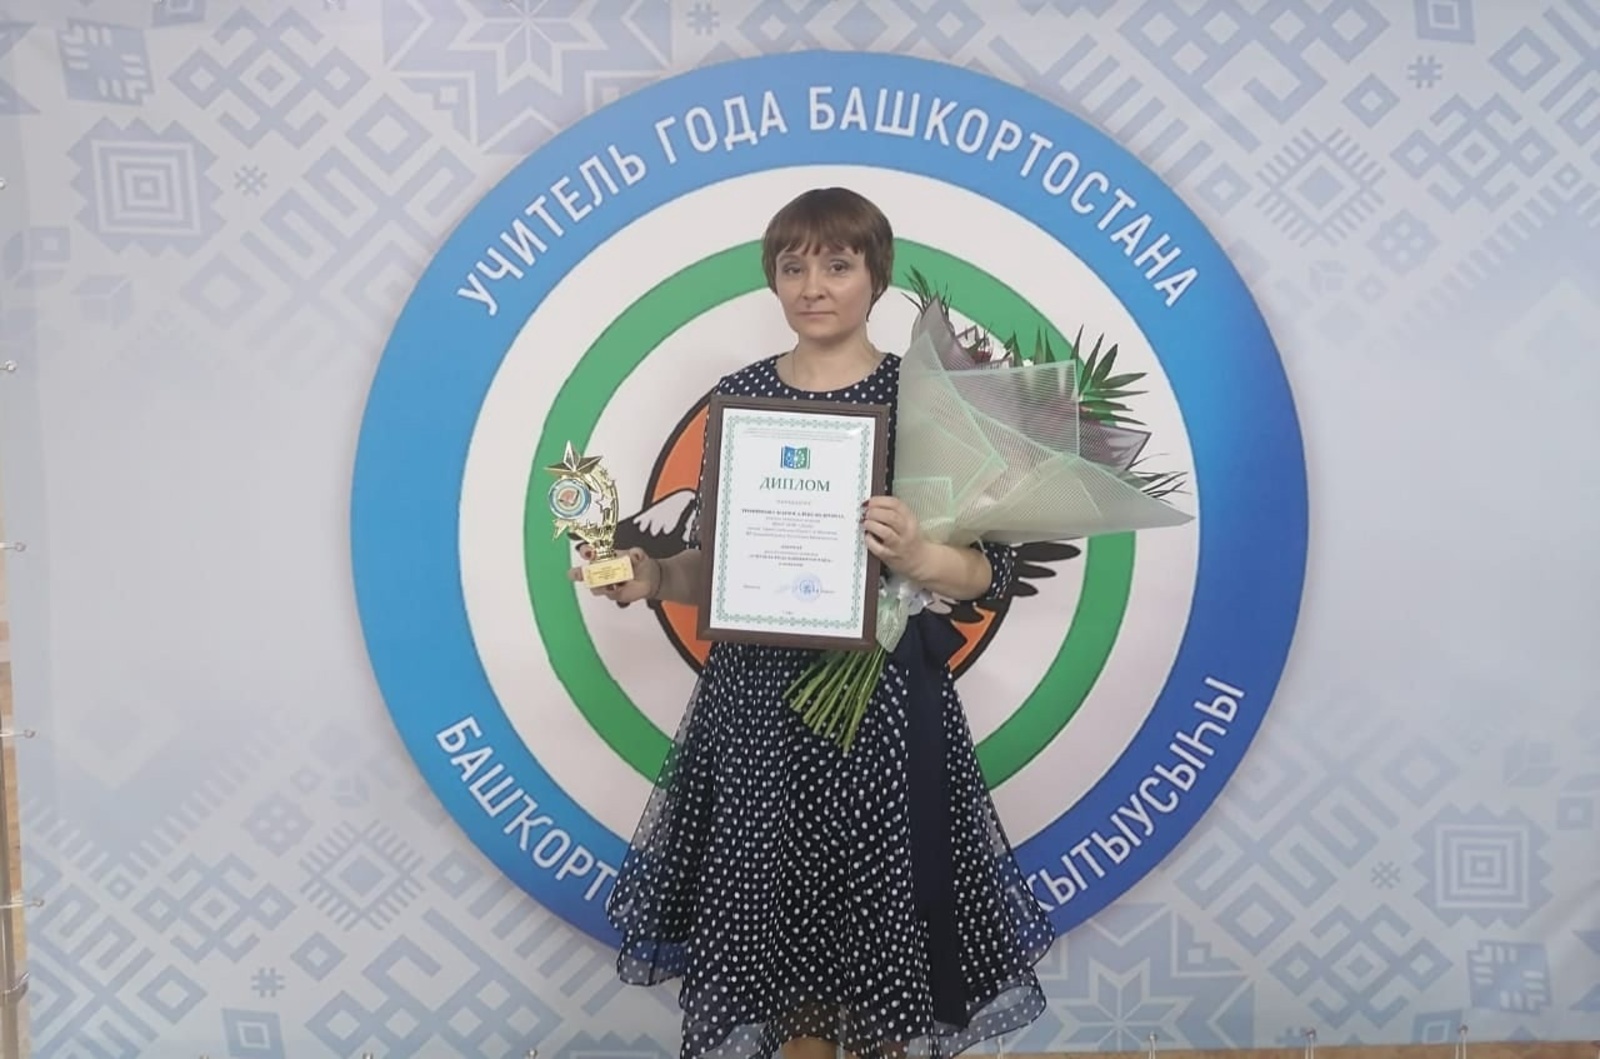 Учитель Дуванского района - лауреат республиканского конкурса «Учитель года Башкортостана»